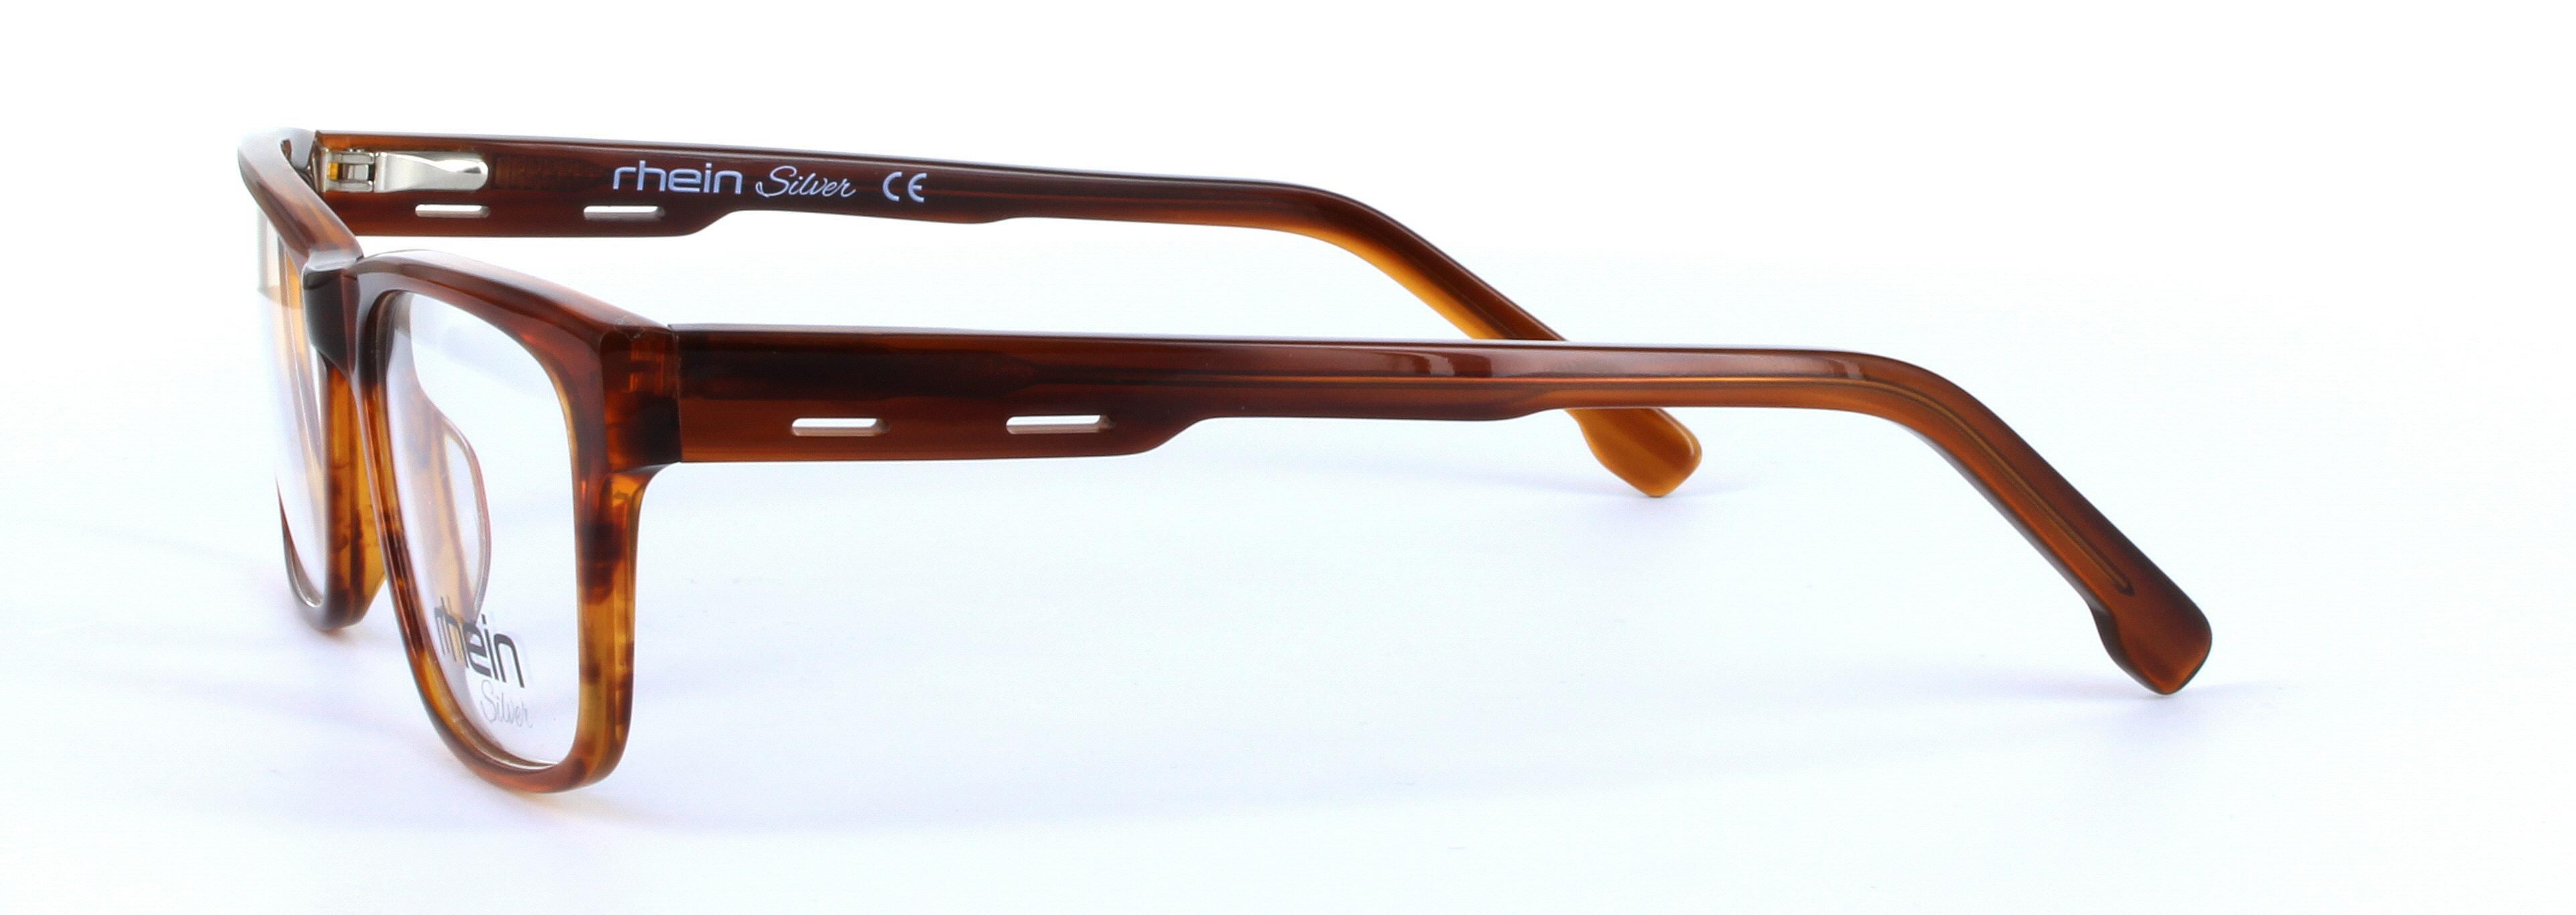 Cygnus Brown Full Rim Rectangular Plastic Glasses - Image View 2